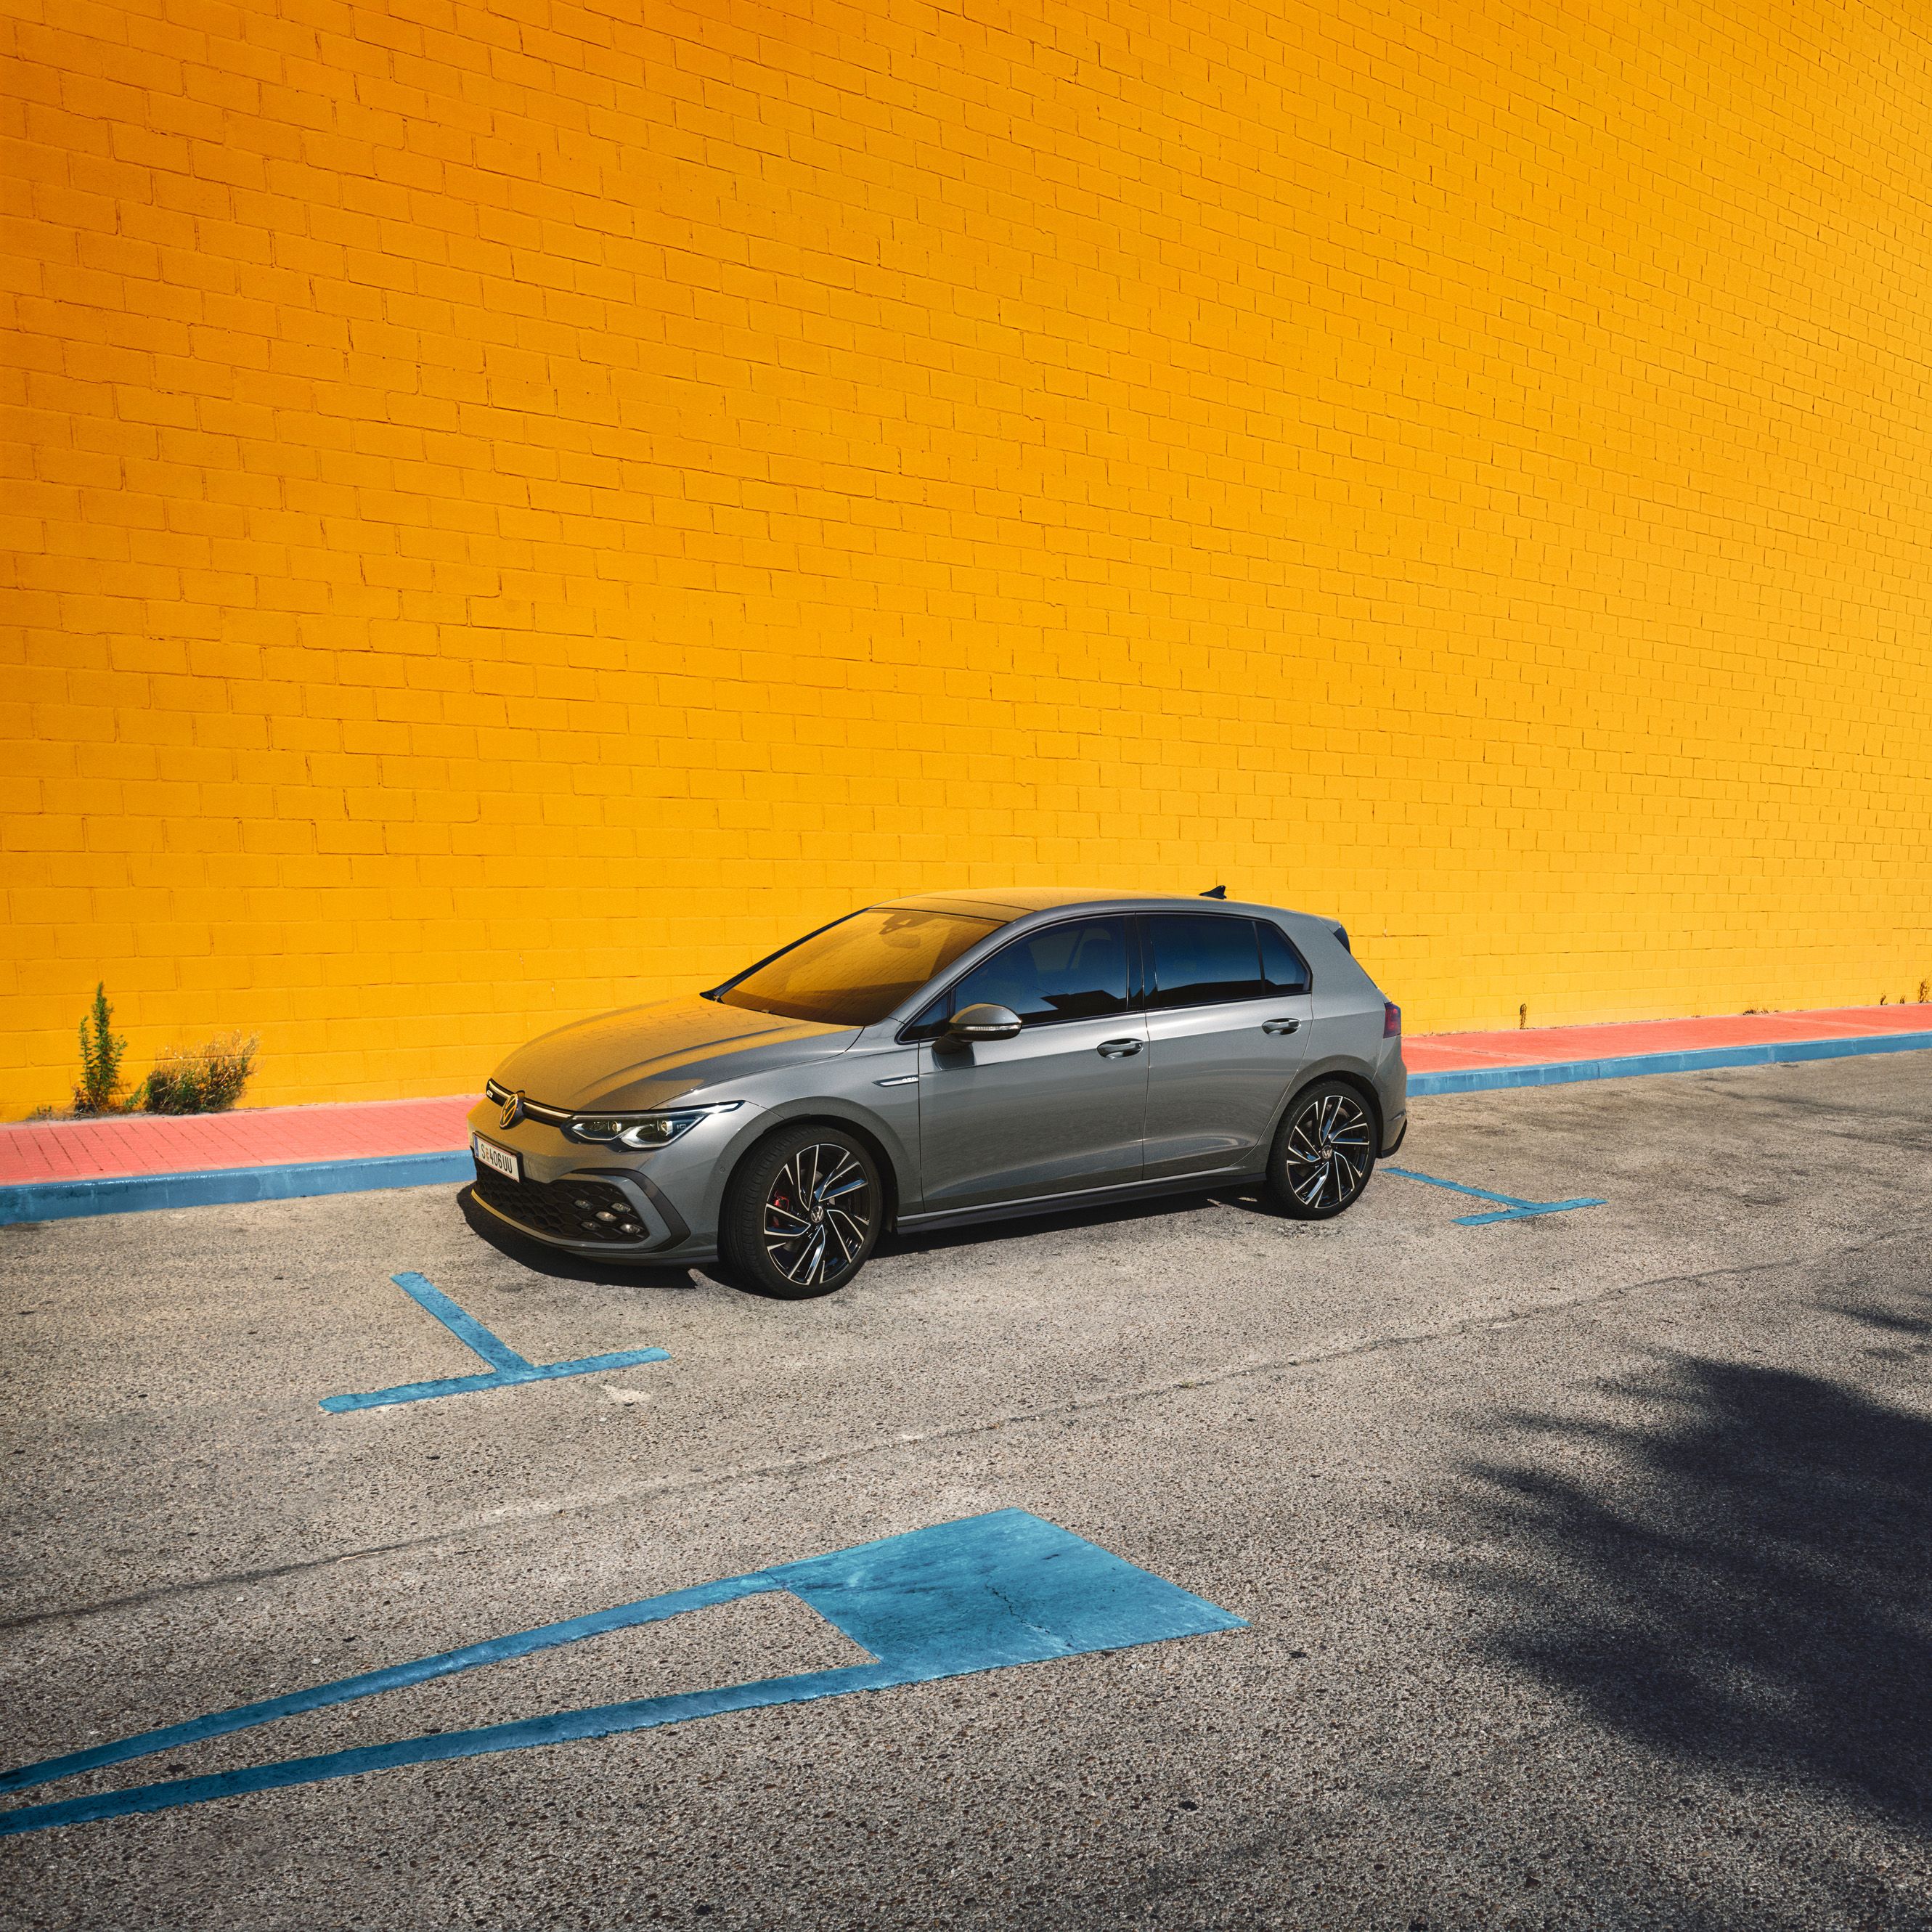 VW Golf GTD steht vor einer orangen Wand